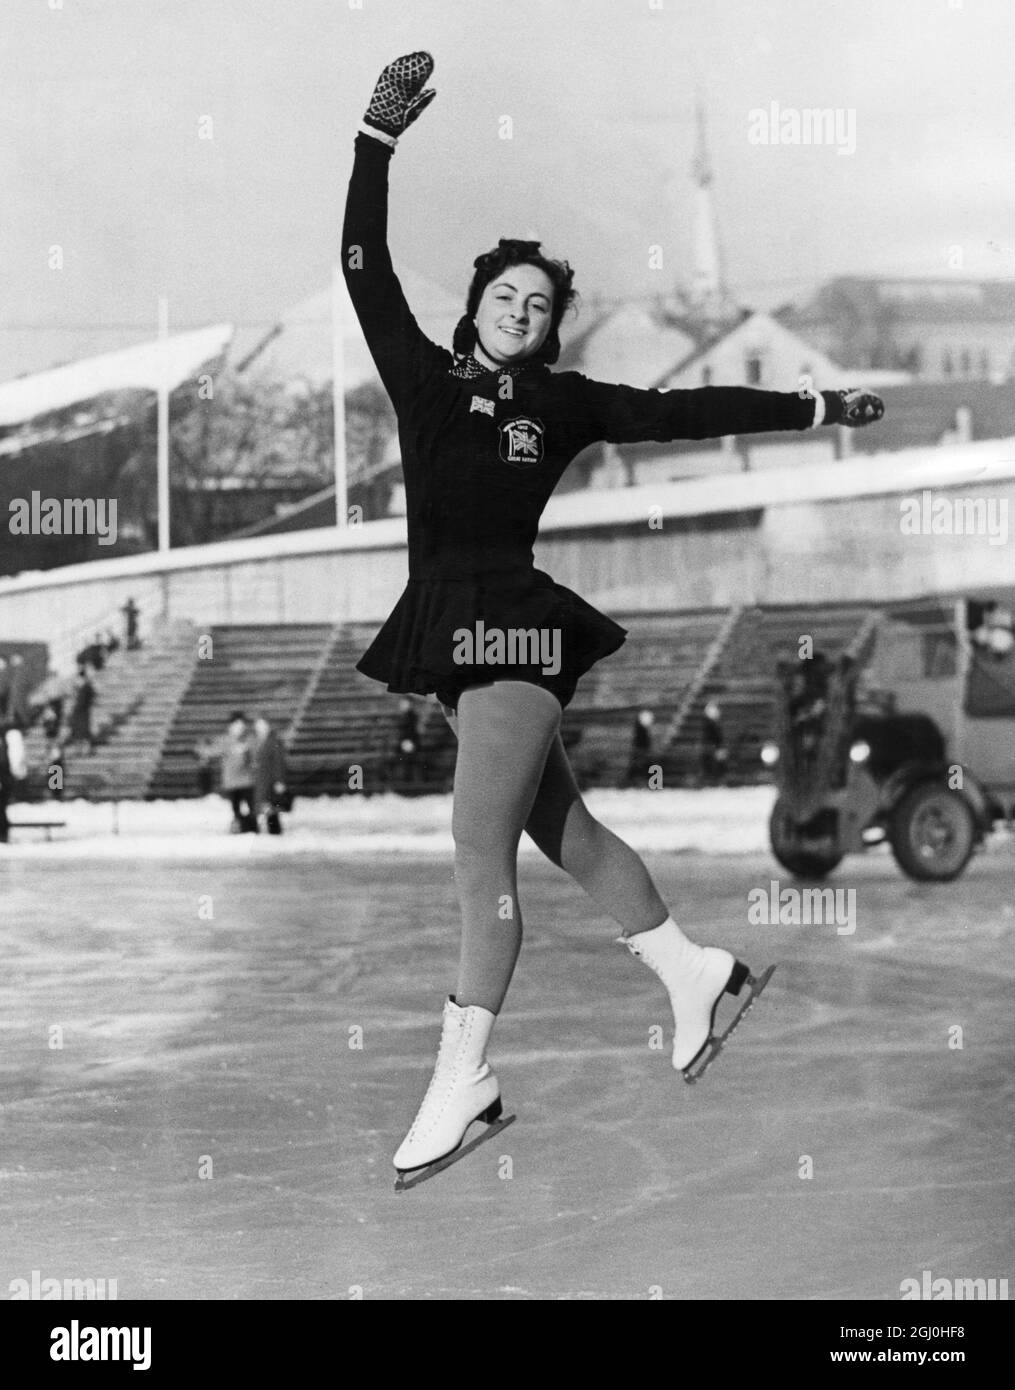 Olympische Winterspiele 1952 - Oslo, Norwegen die 21-jährige Jeannette Altwegg aus Streatham gewann die Olympischen Spiele im Eiskunstlauf in Oslo um einen Bruchteil unter 20 Punkte. Sie wurde sofort als größte Eiskunstläuferin gefeiert - Mann oder Frau - Amateur oder Profi - seit dem Jahr 1896 - 18. Februar 1952 - ©TopFoto Stockfoto